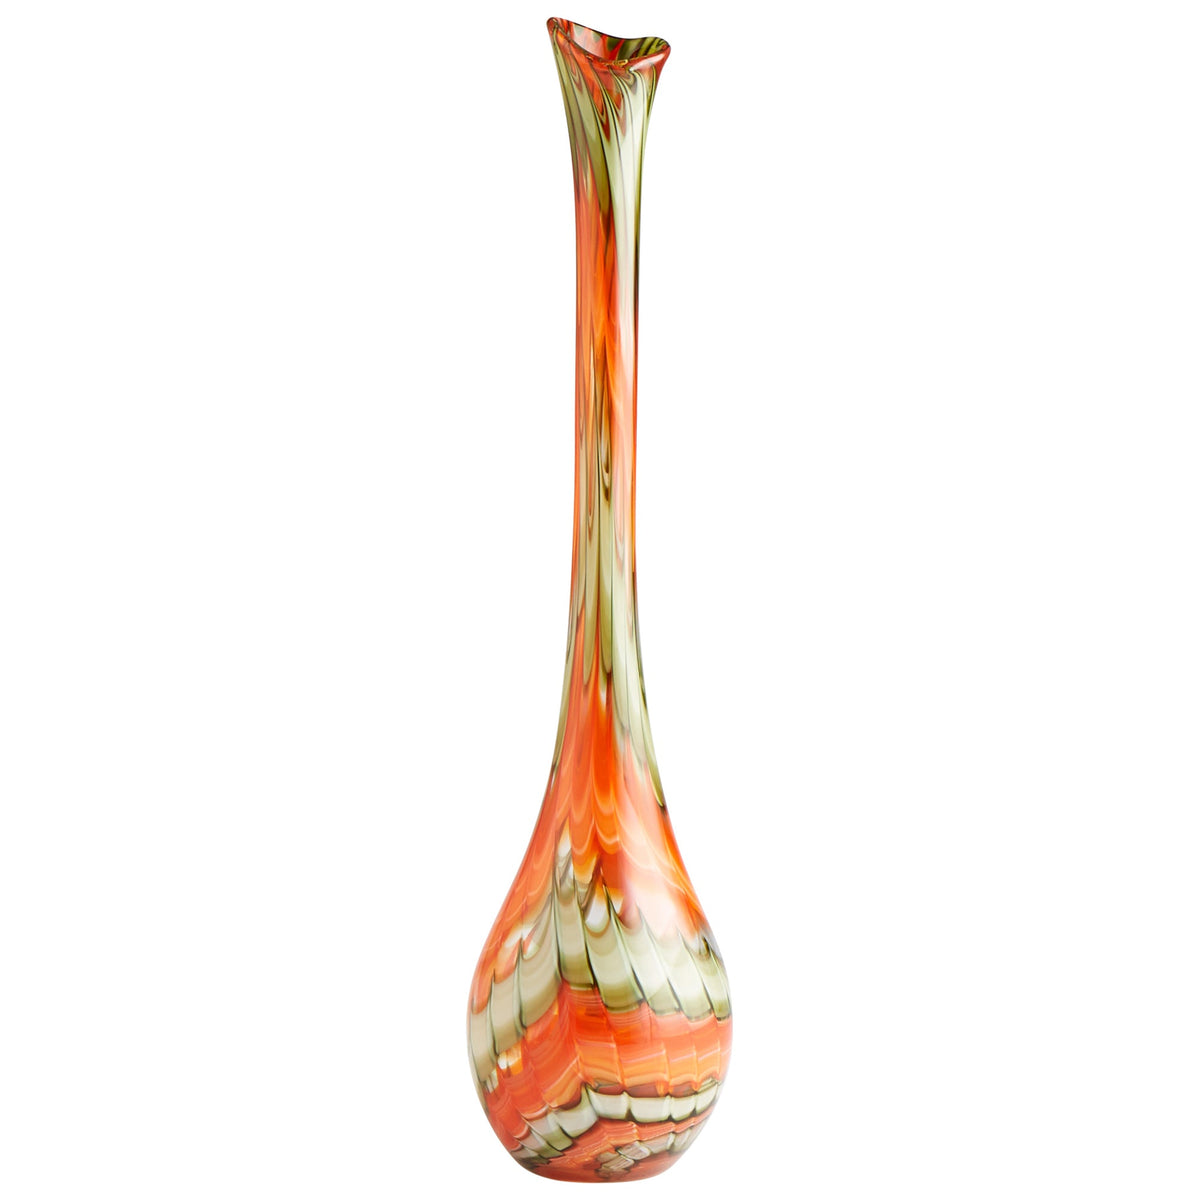 Atu Vase | Orange - Large by Cyan